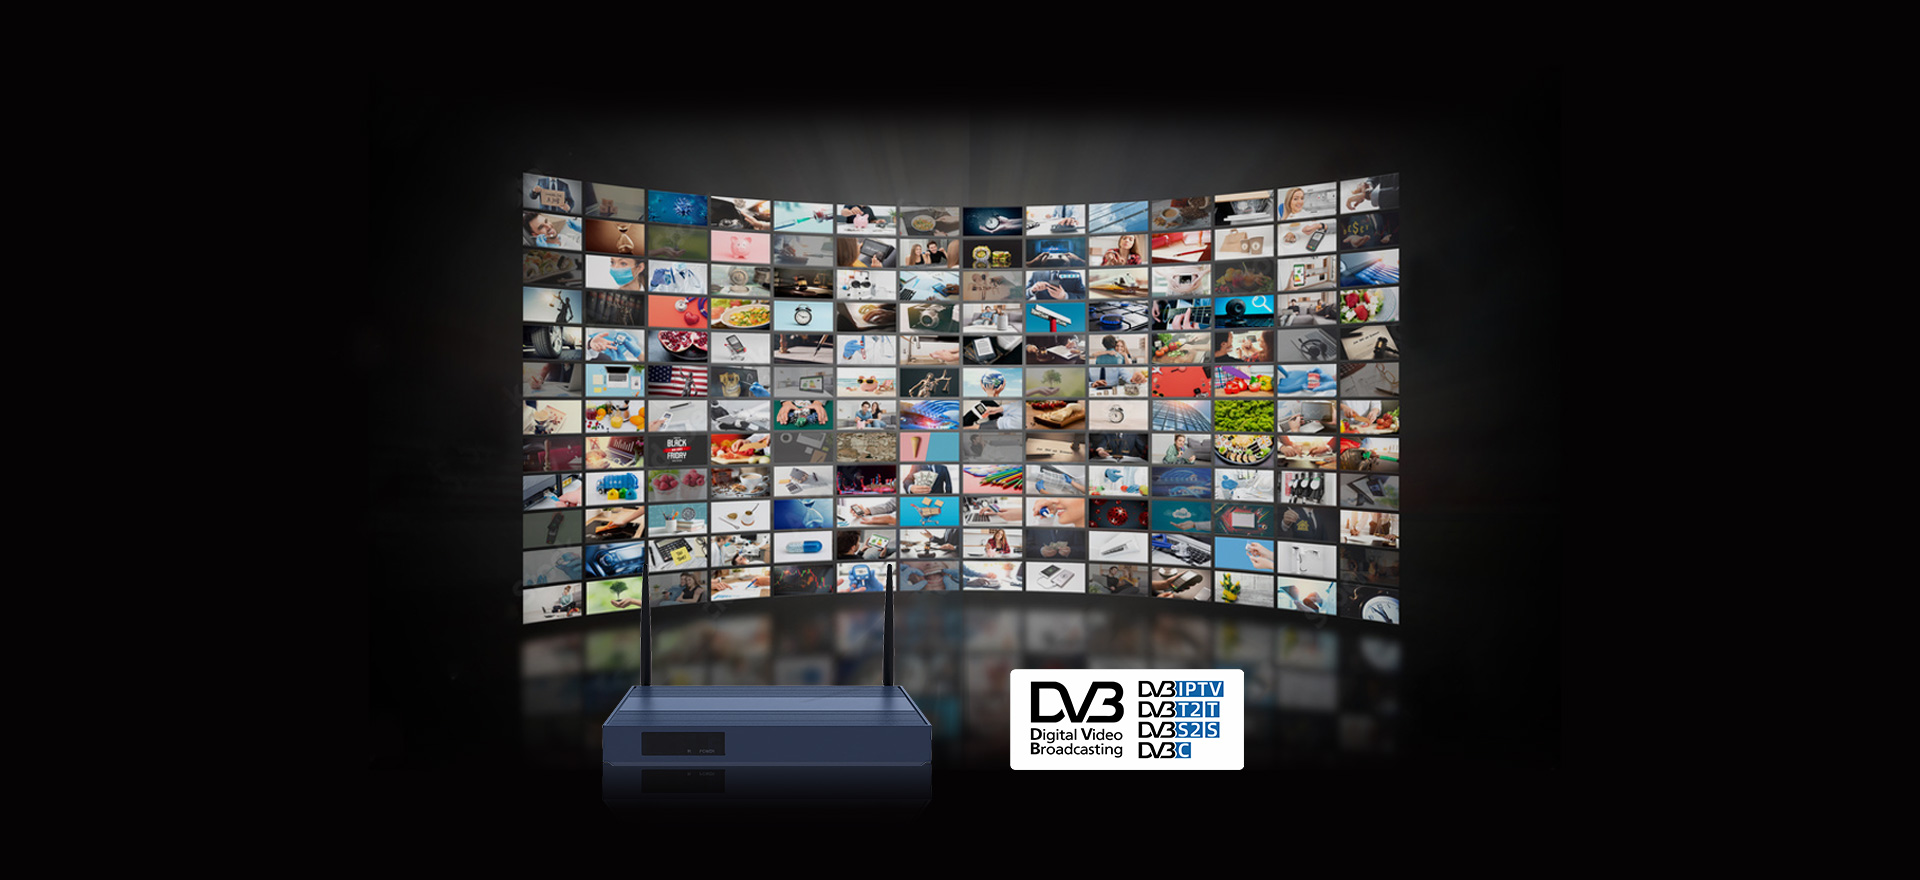 KW1 support DVB-S/S2 DVB-T/T2 DVB-C Standard